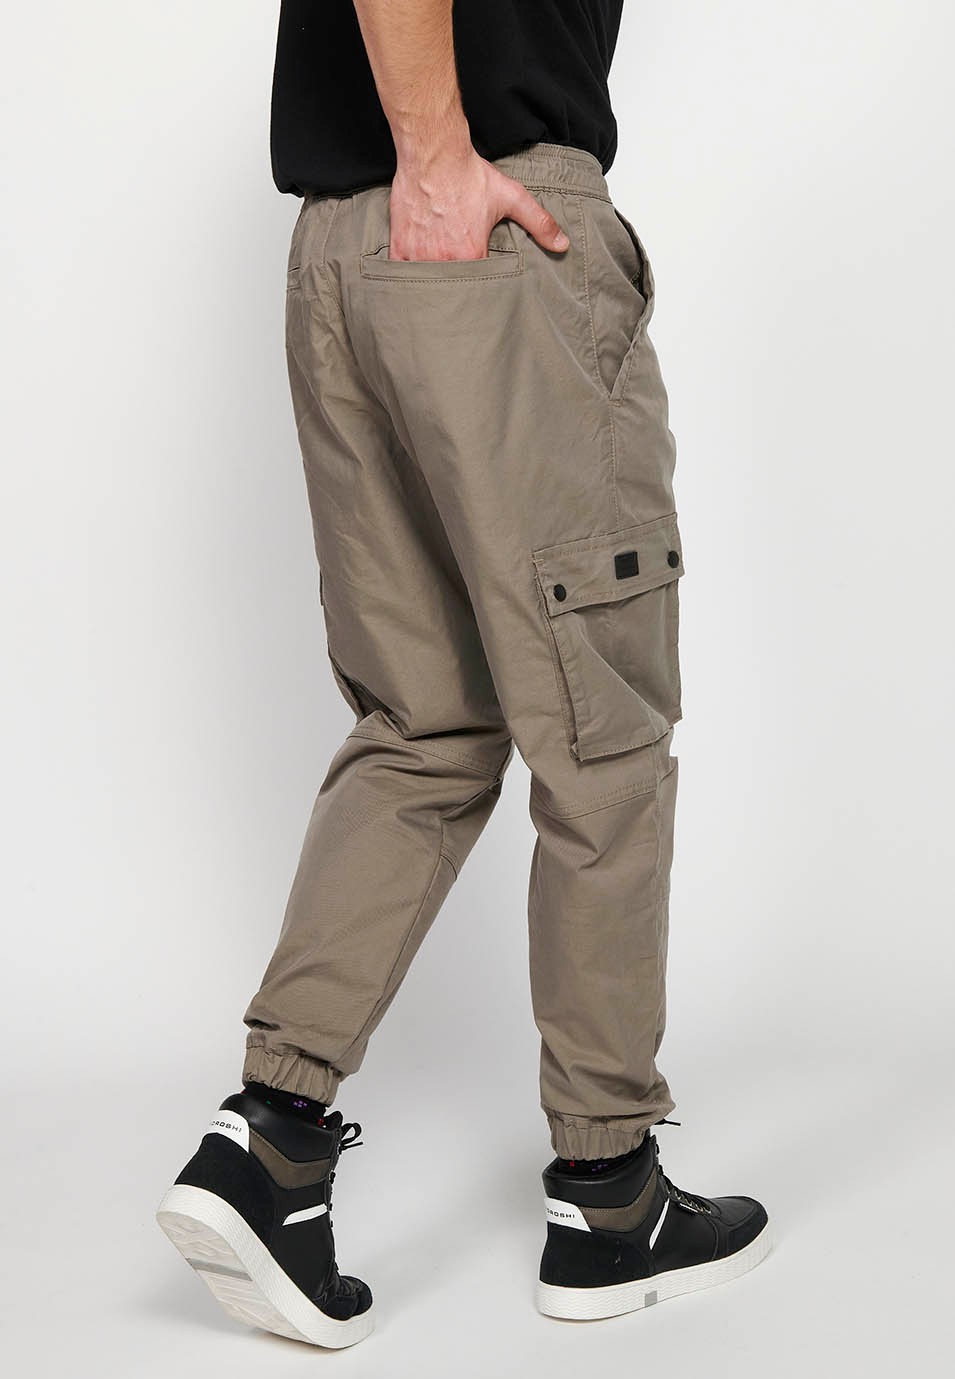 Pantalon de jogging cargo beige avec taille caoutchoutée avec cordon de serrage et poches, deux côtés avec rabat pour homme